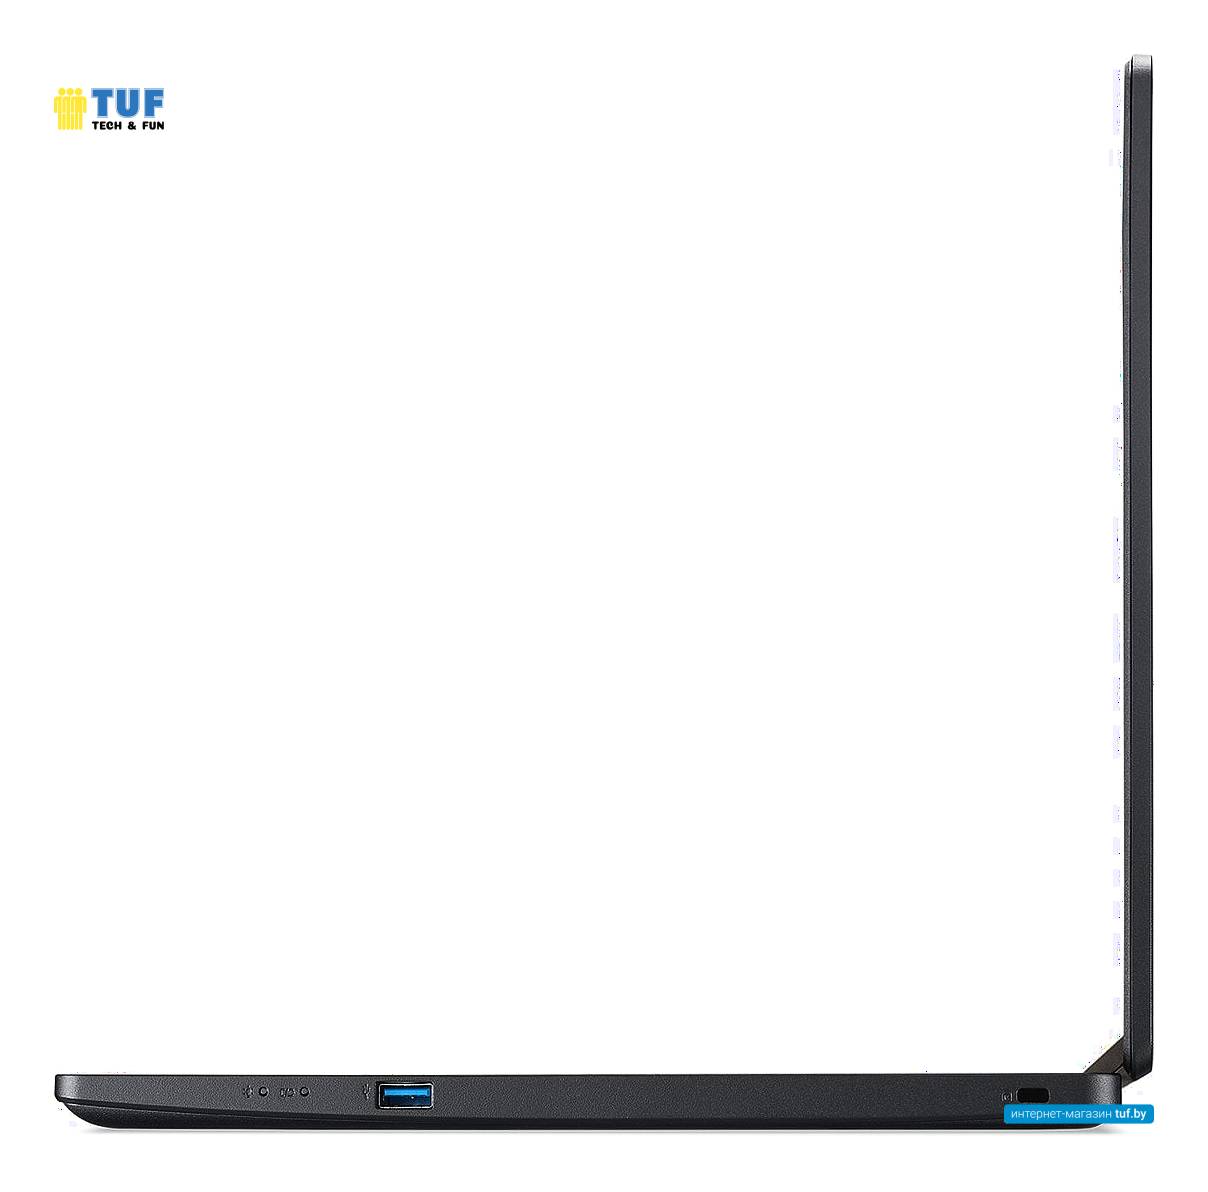 Ноутбук Acer TravelMate P2 TMP215-53-501F NX.VPVER.007